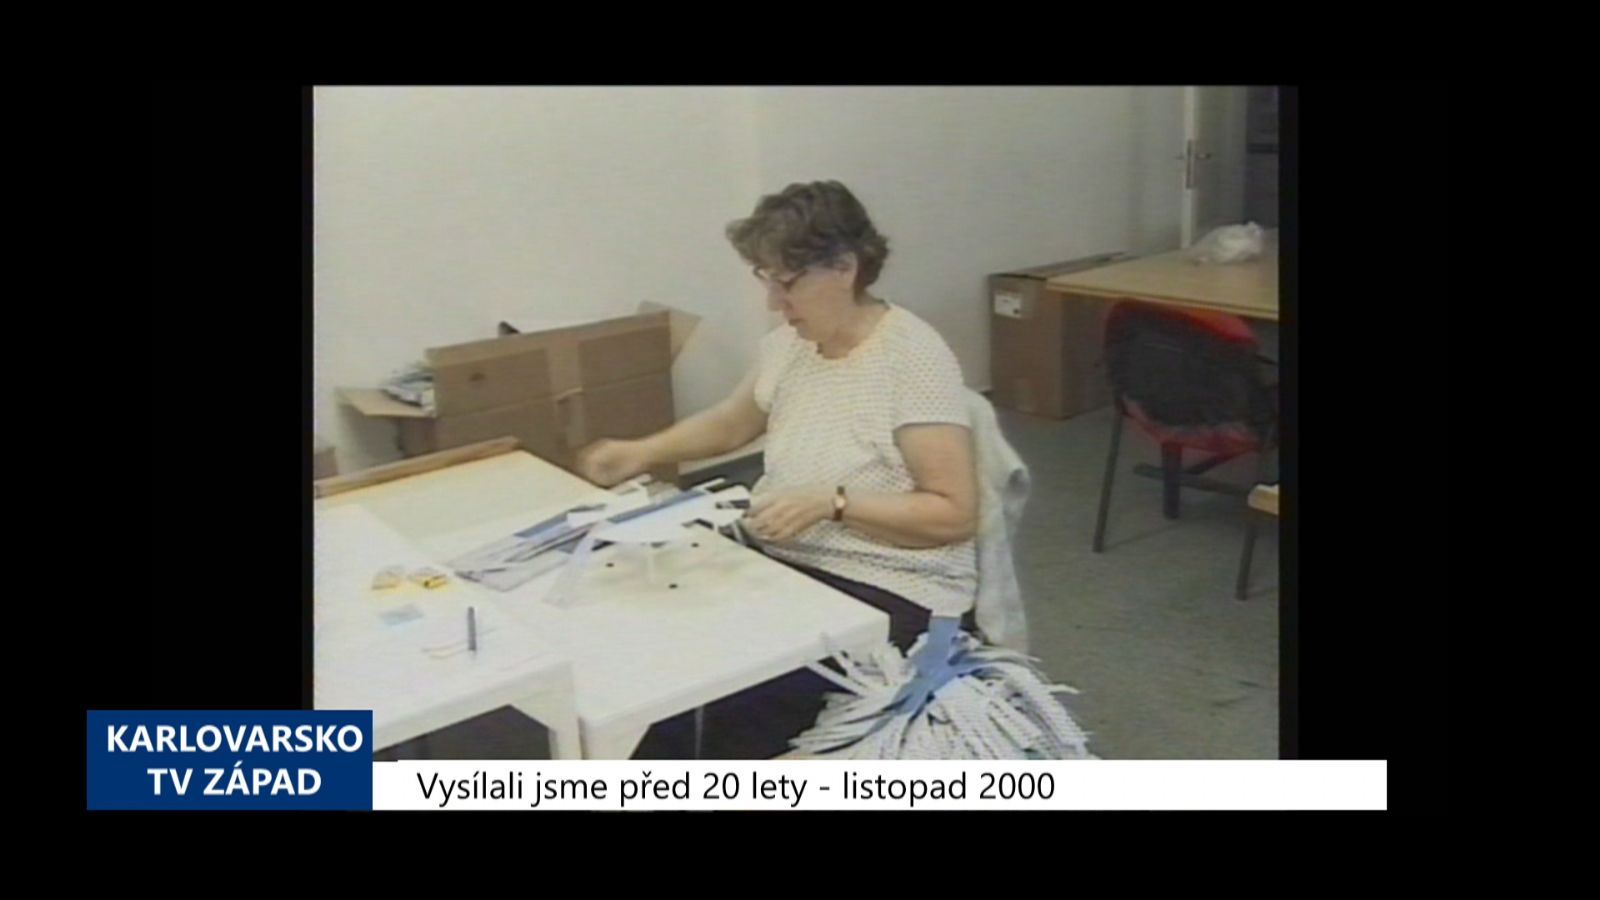 2000 – Cheb: Součástí Chráněných dílen bude přeškolovací centrum (TV Západ)